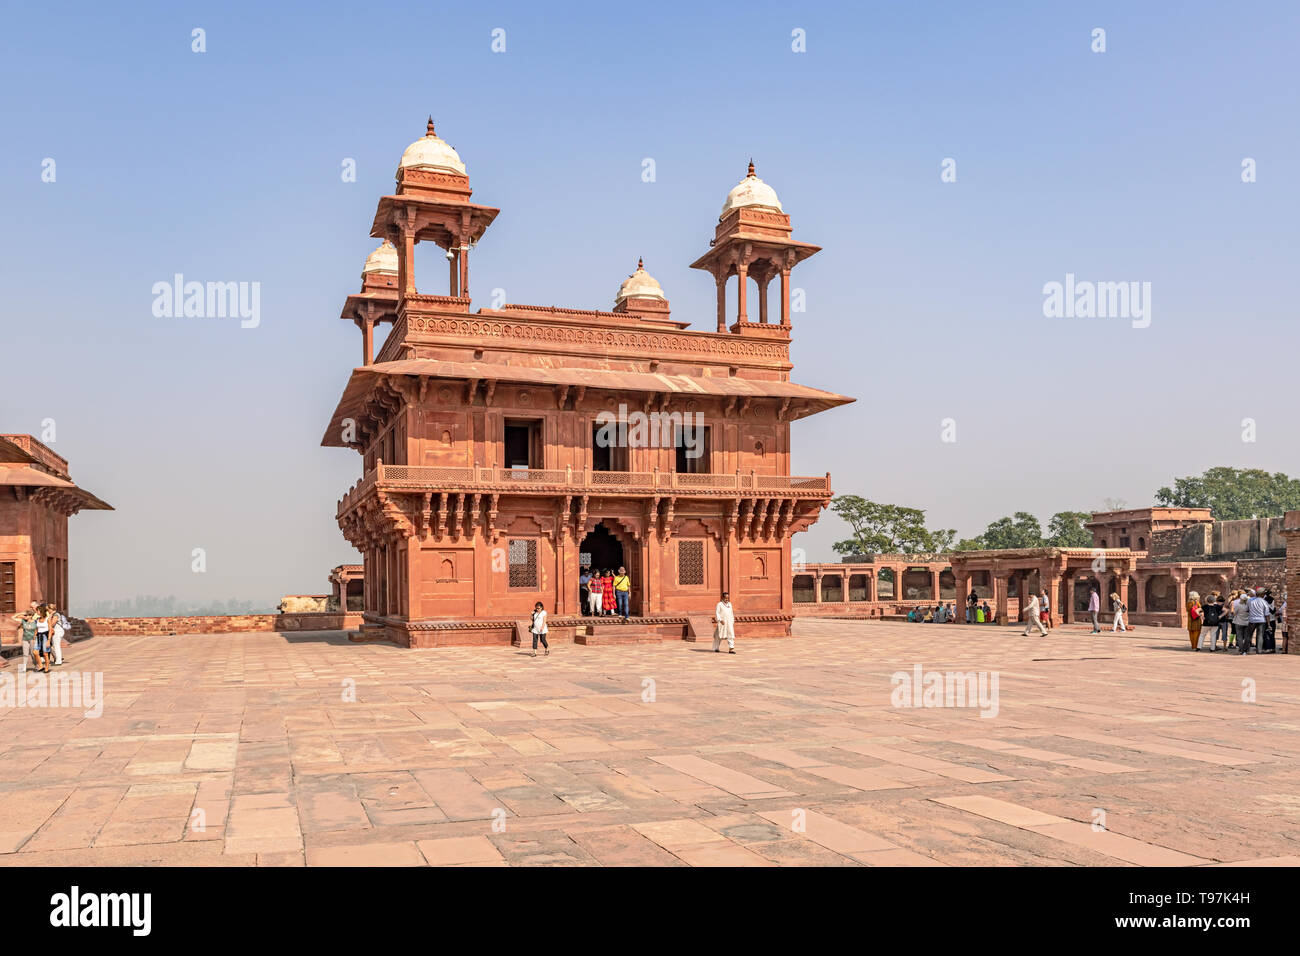 Agra, Indien - 20.November 2018: Touristen, die in der Halle des privaten Publikums, die verlassenen Mogul Stadt durch große Großmogul Akbar in späten 16 Cent gebaut Stockfoto